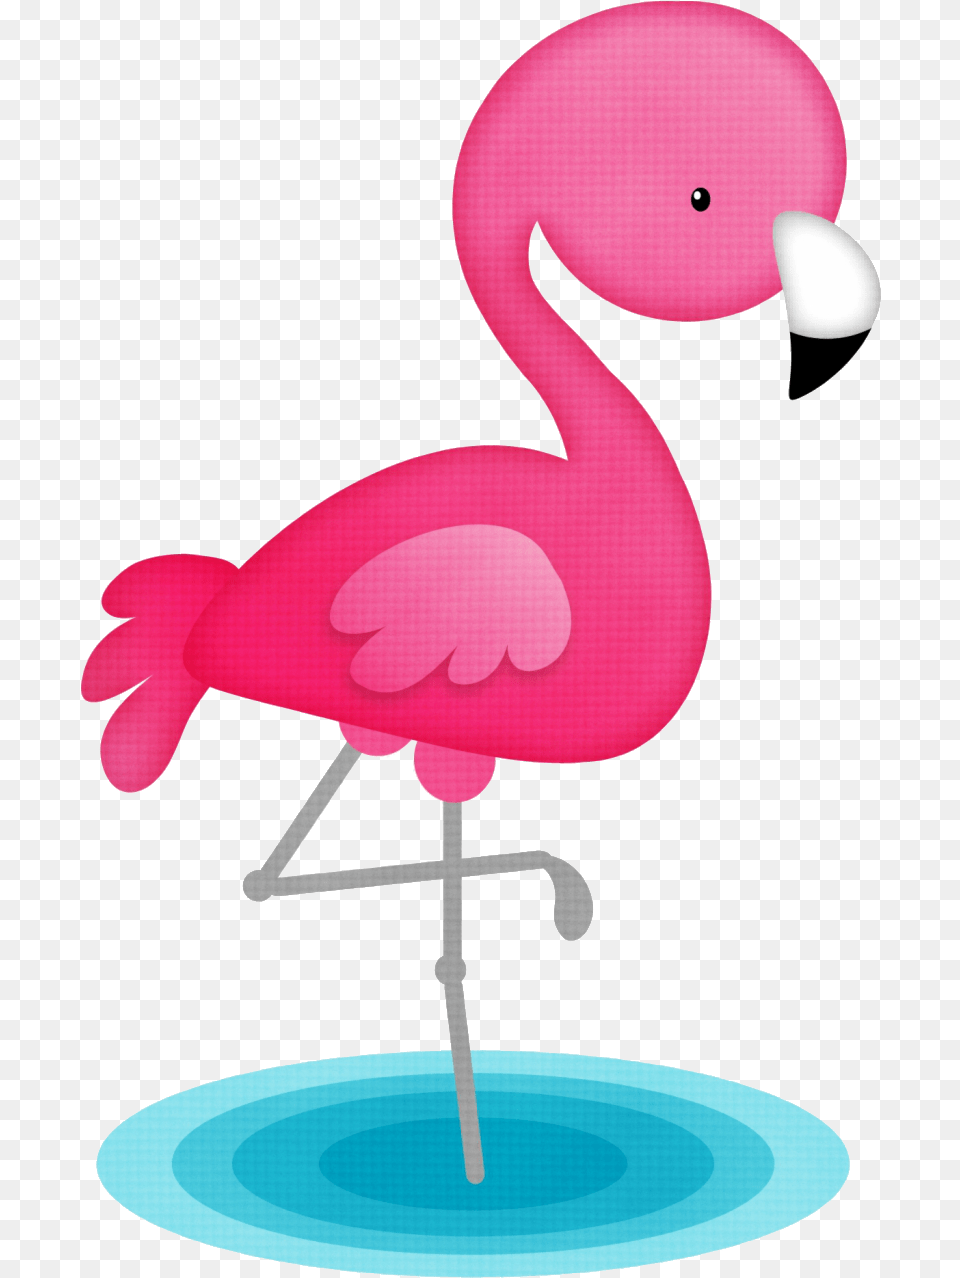 Flamingo Minus, Animal, Bird Free Png